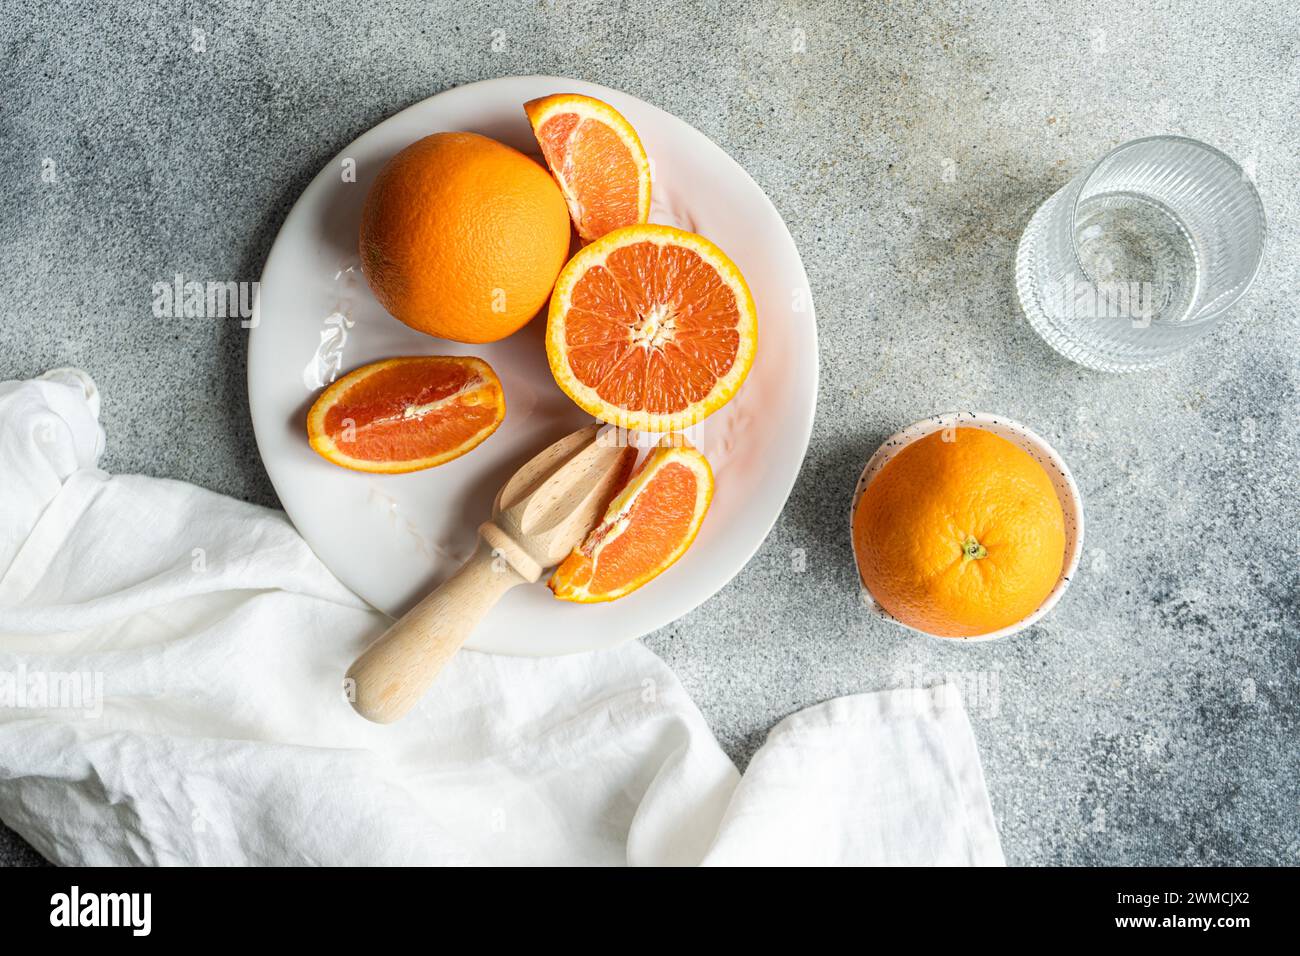 Vue de dessus des oranges fraîches pressées pour faire du jus d'orange fraîchement pressé Banque D'Images